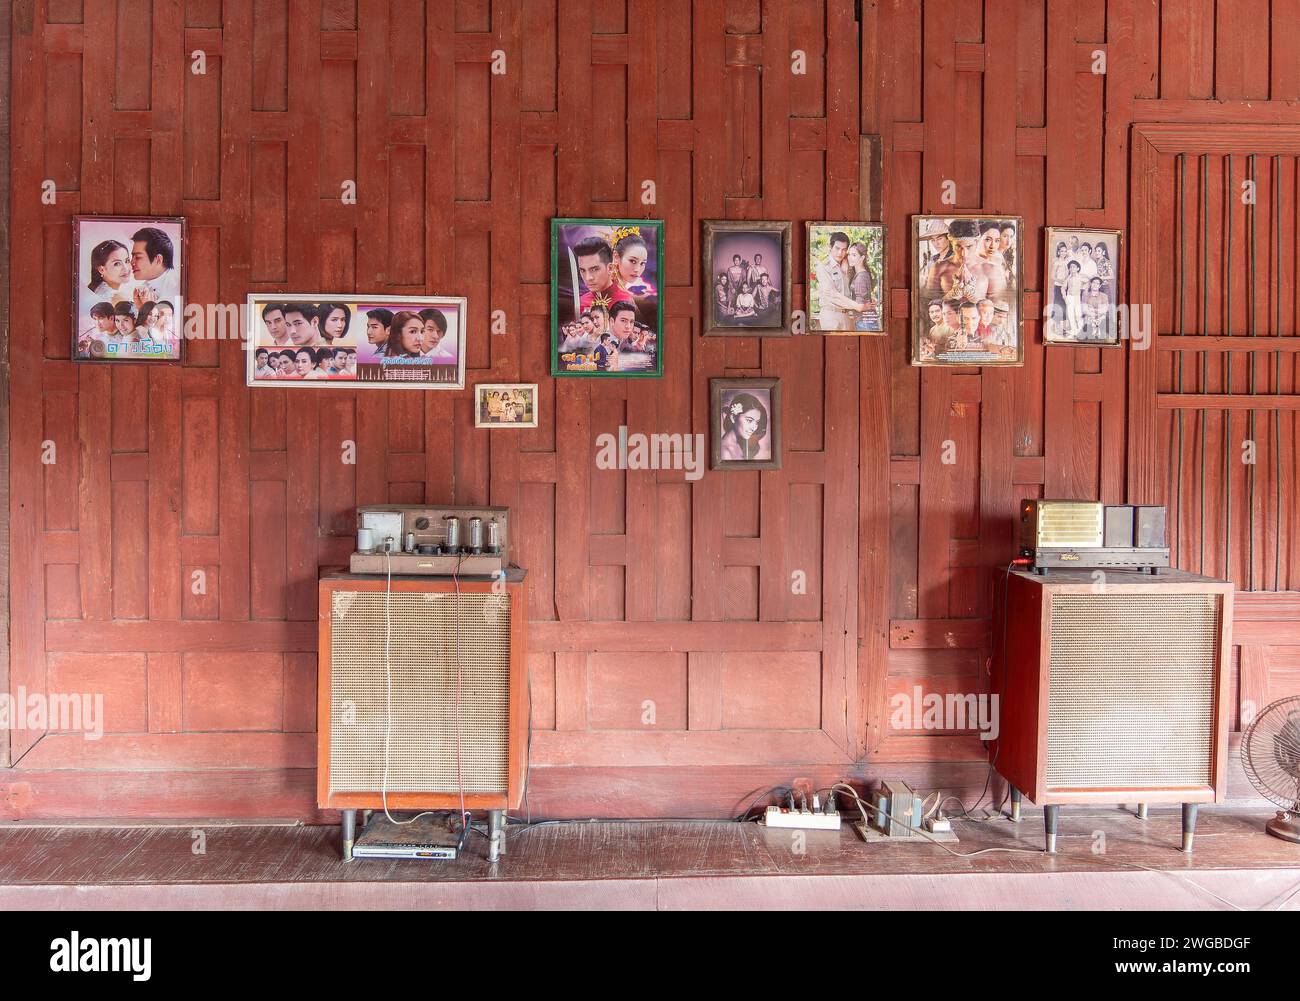 Inneneinrichtung des traditionellen thailändischen Holzhauses mit klassischer Stereo-hifi-anlage und Fotos thailändischer Berühmtheiten an der Wand. Stockfoto